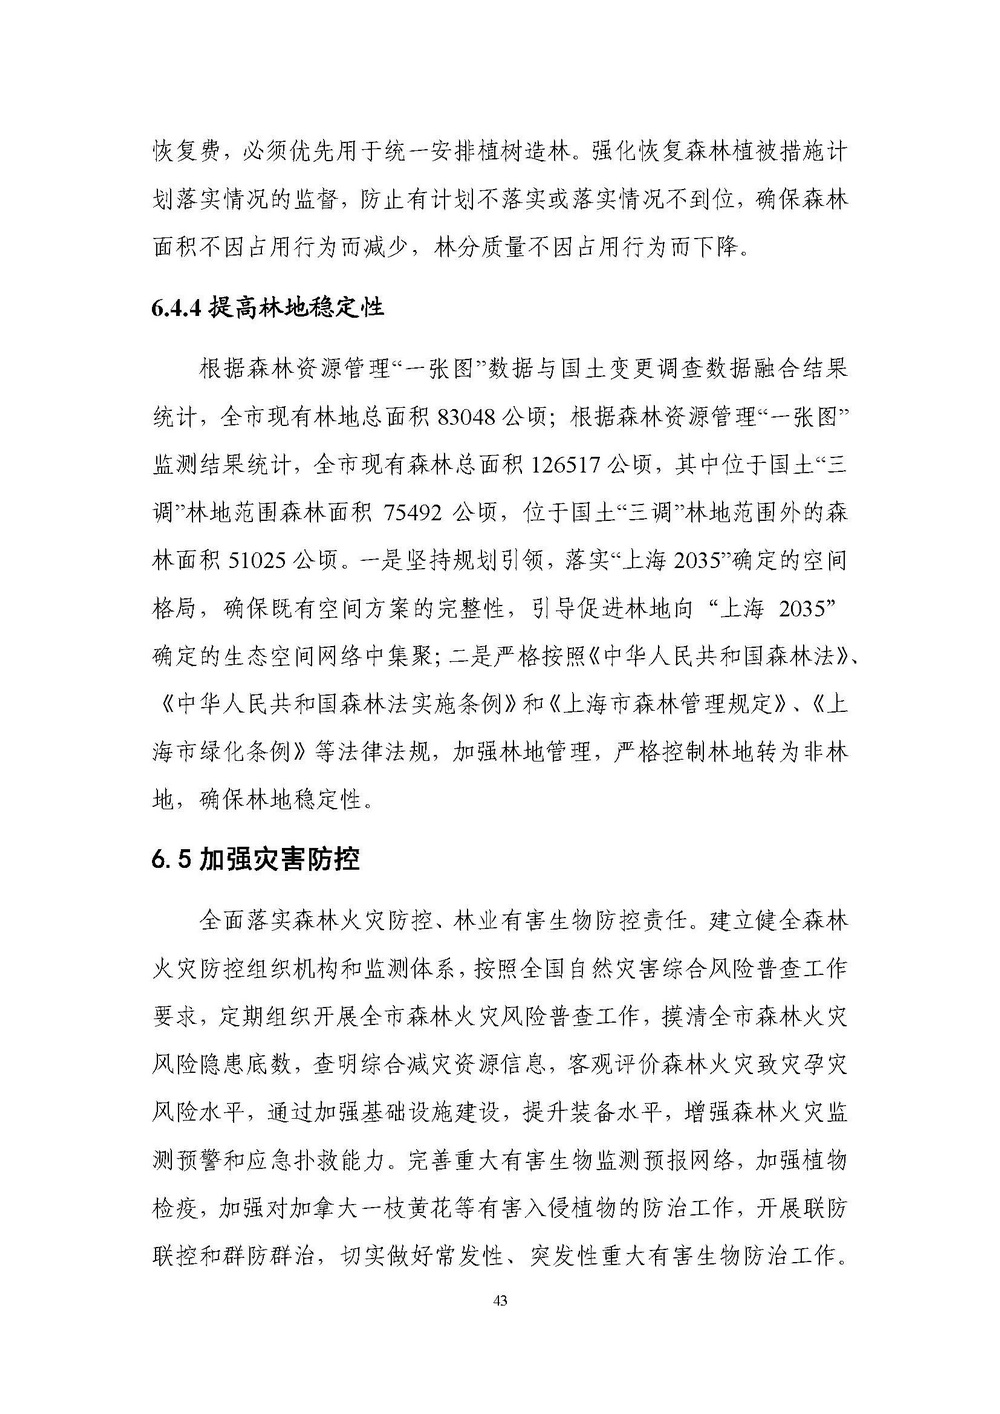 上海市森林和林地保护利用规划文本 公开稿 附图_页面_46.jpg